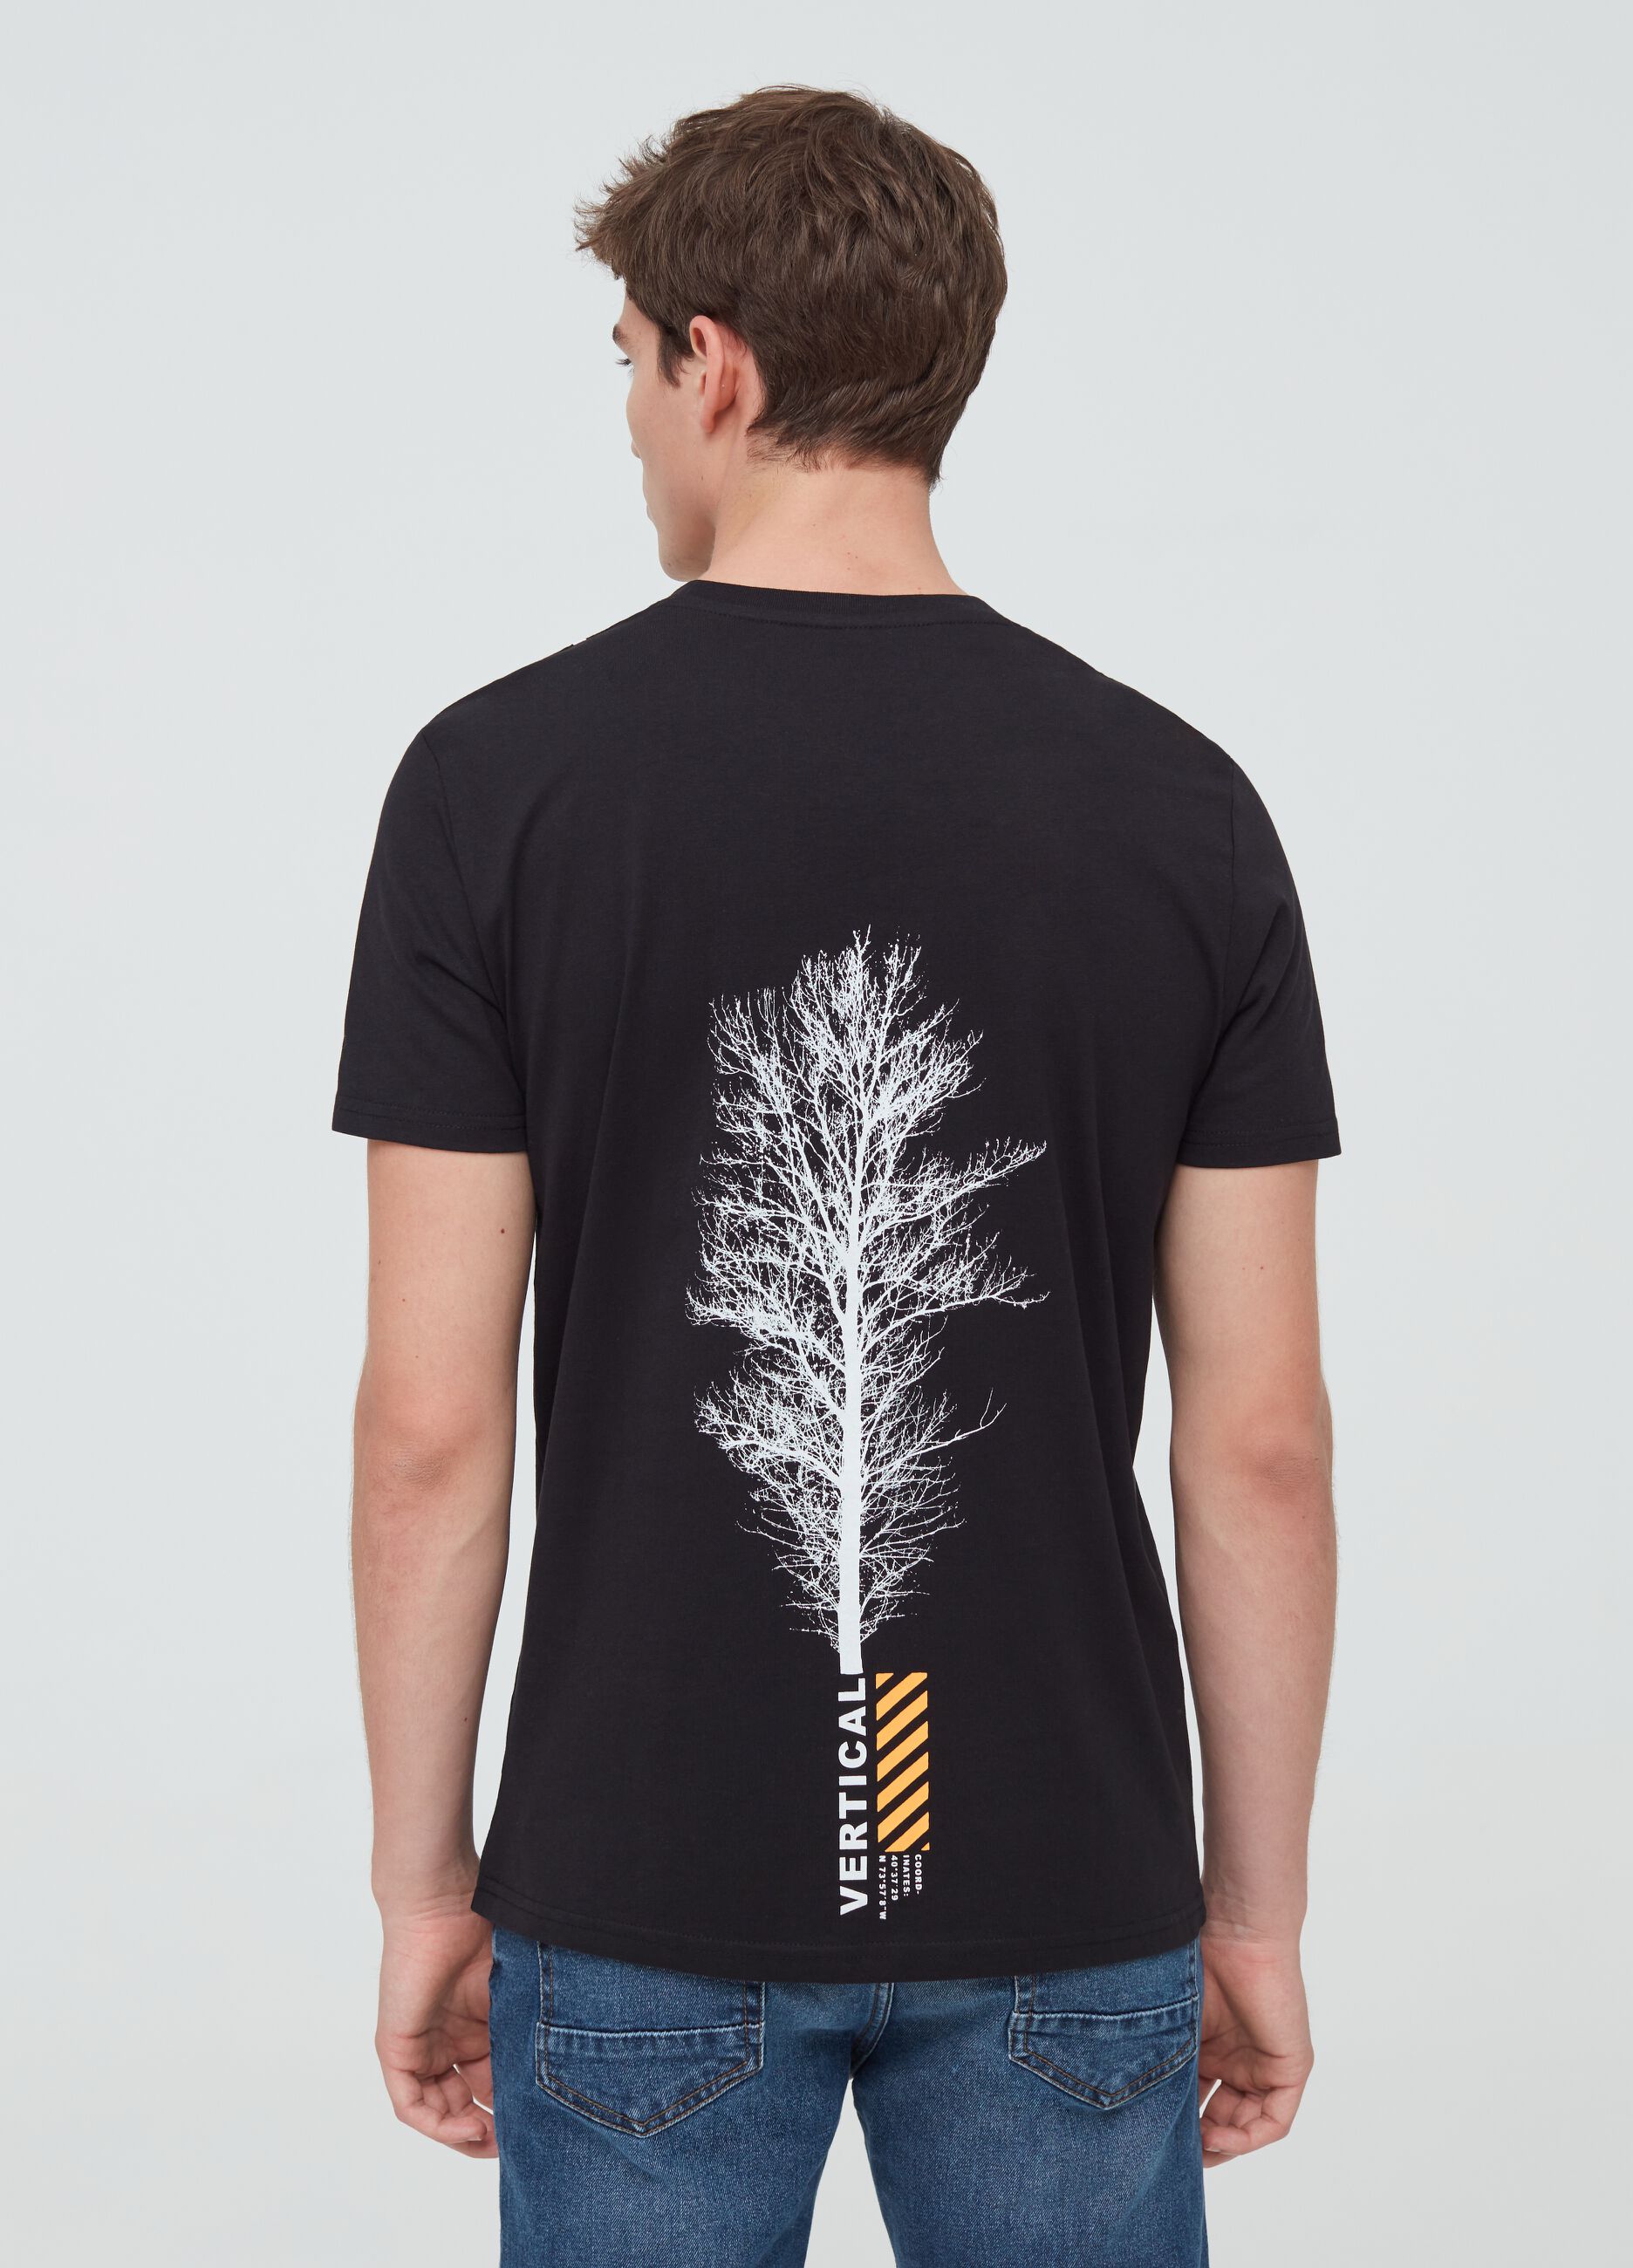 Camiseta algodón 100% estampado árbol